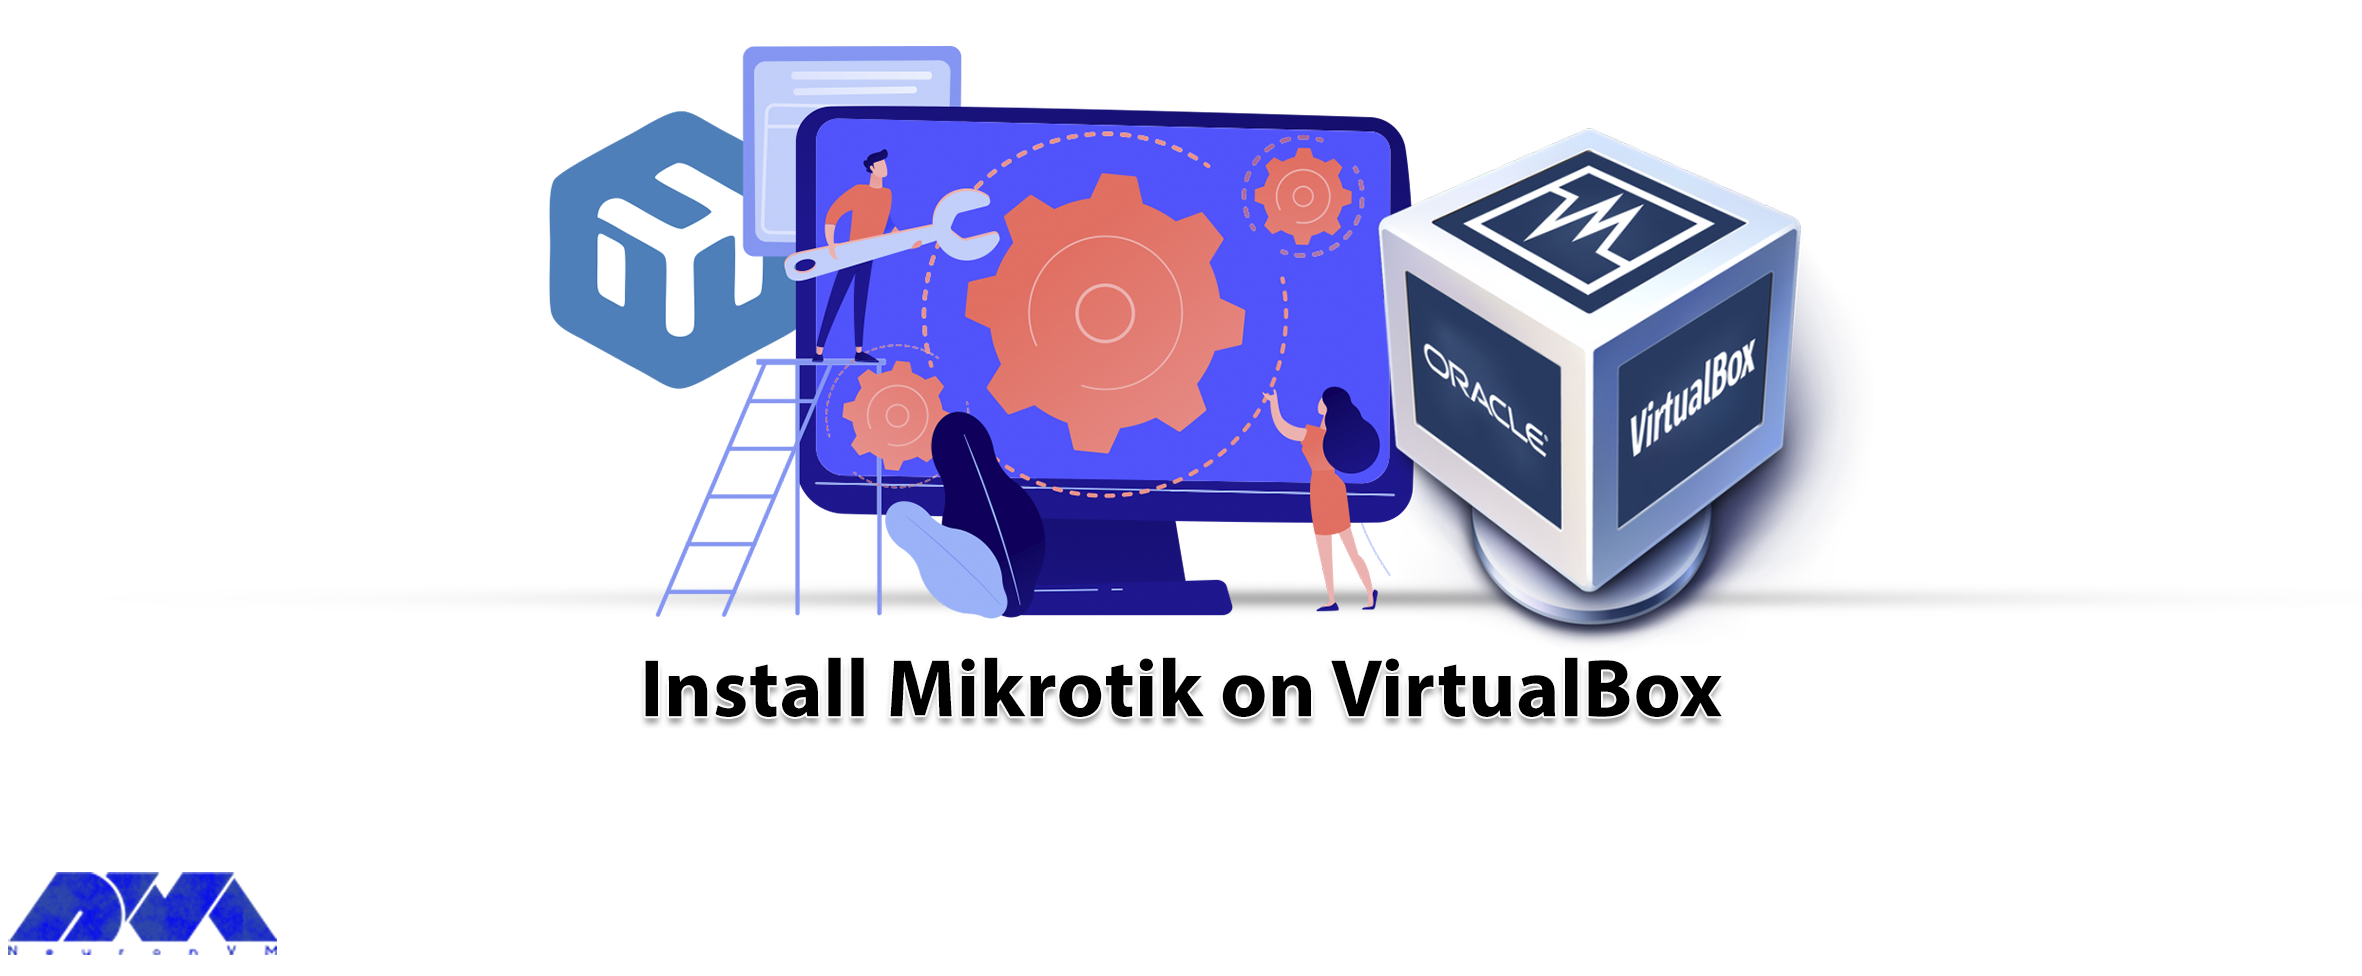 How to Install MikroTik on VirtualBox - NeuronVM